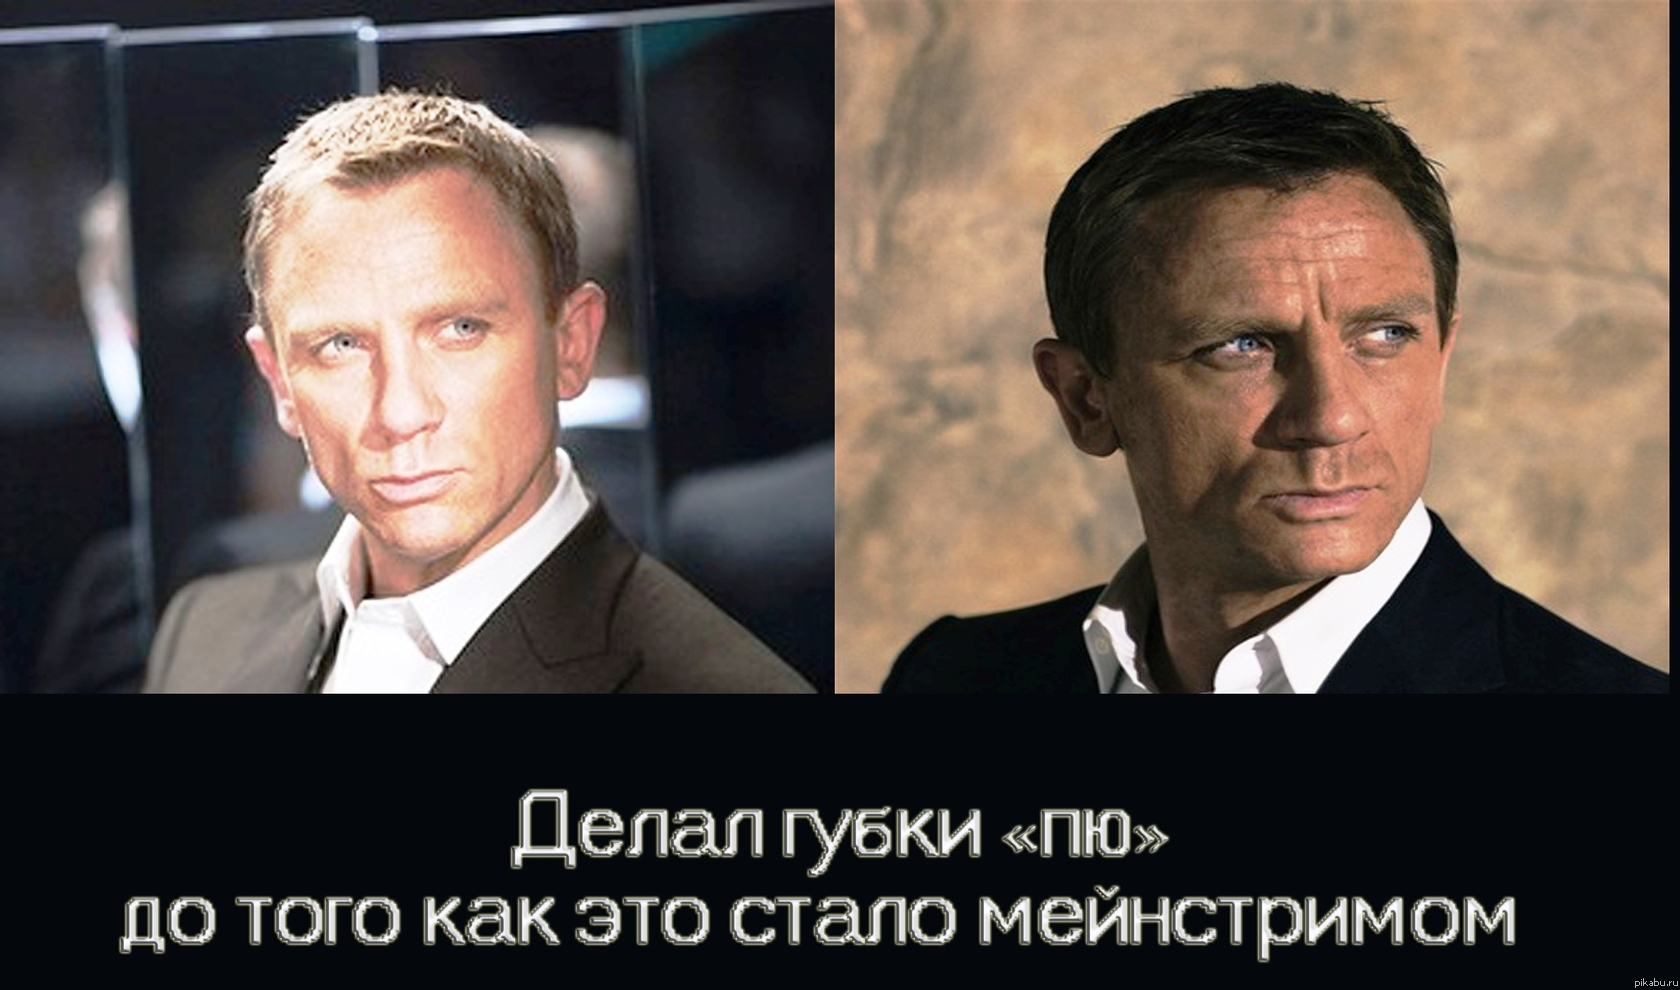   =)        "007"         =))